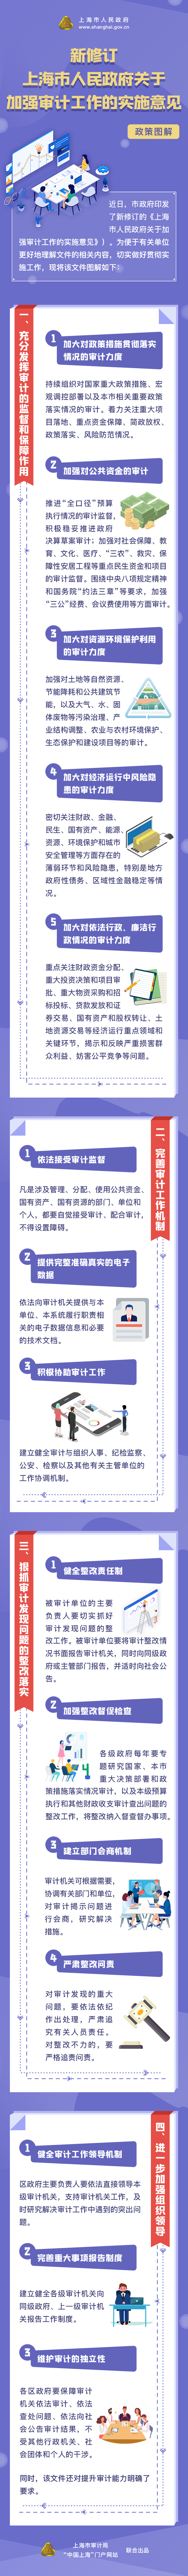 新修订《上海市人民政府关于加强审计工作的实施意见》政策图解.png